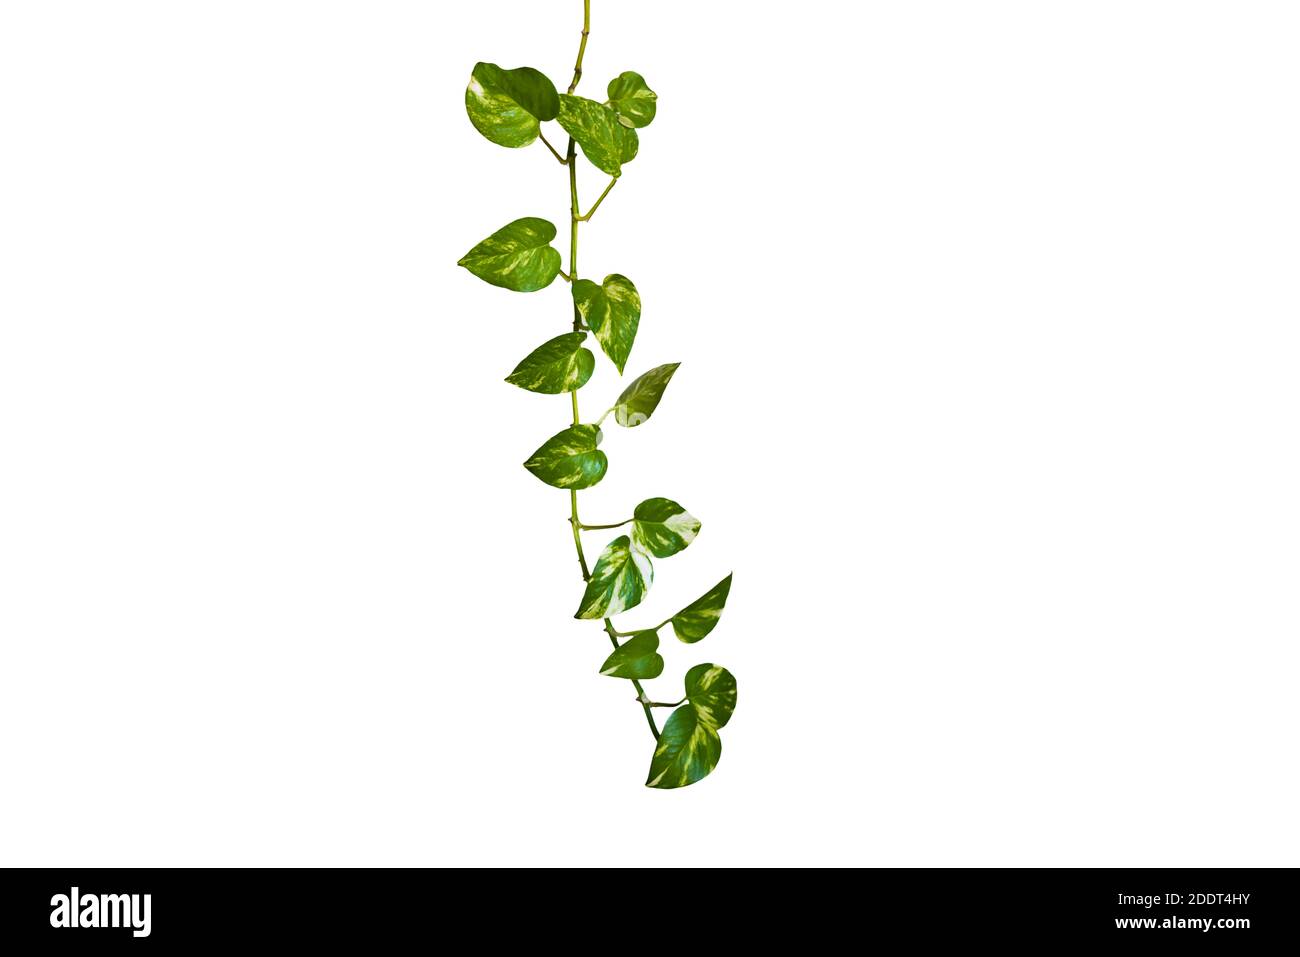 Foglie verdi a forma di cuore vite ivy pianta cespuglio di edera del diavolo o pothos dorato (Epipremnum aureum) isolato su sfondo con percorso di ritaglio. Foto Stock